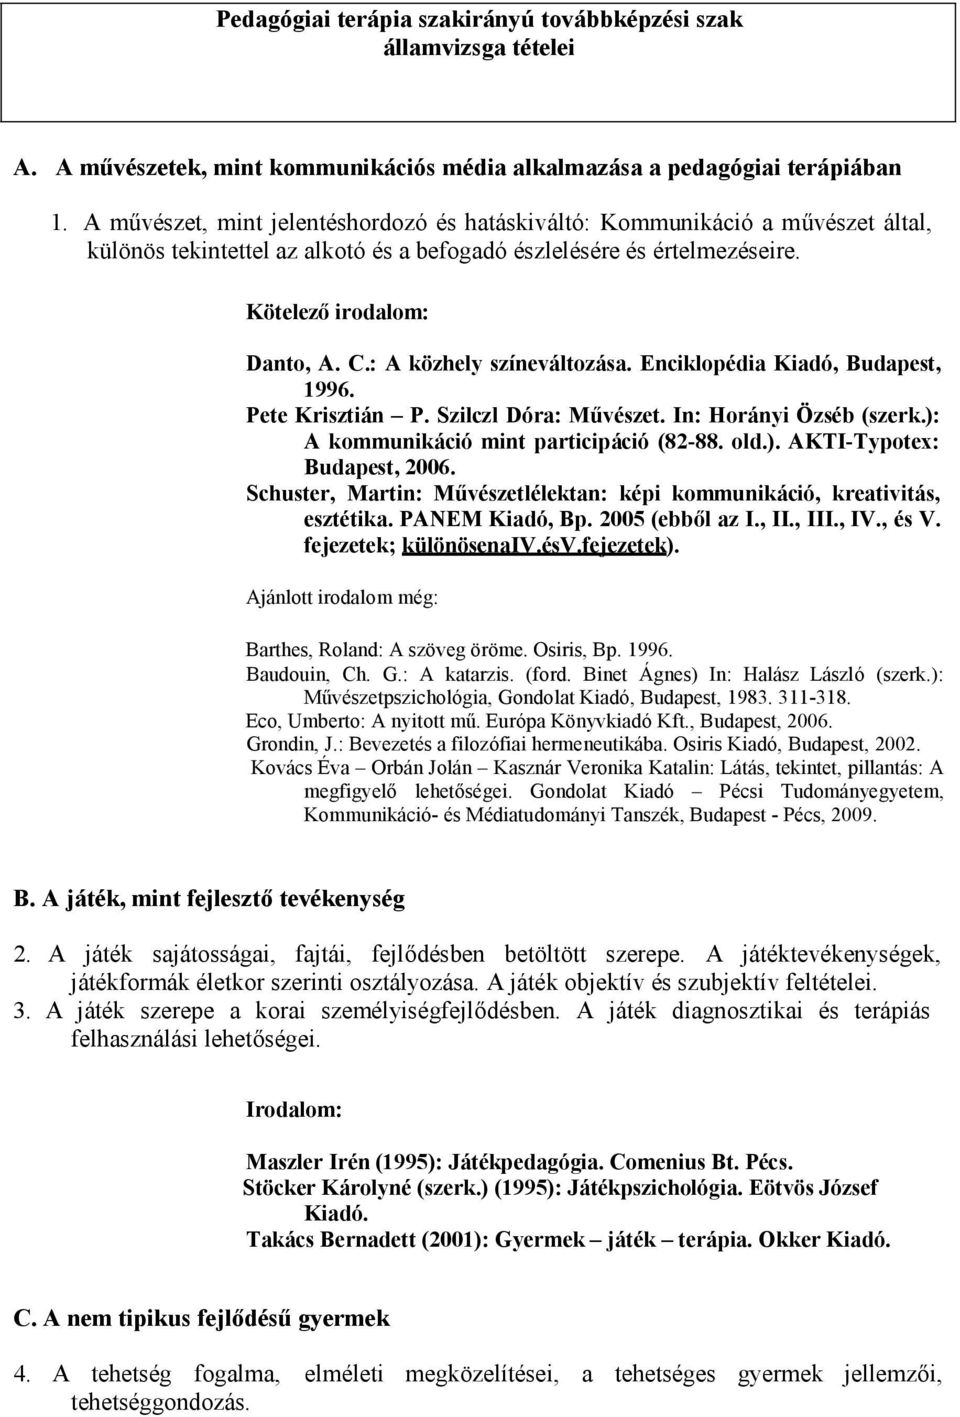 : A közhely színeváltozása. Enciklopédia Kiadó, Budapest, 1996. Pete Krisztián P. Szilczl Dóra: Művészet. In: Horányi Özséb (szerk.): A kommunikáció mint participáció (82-88. old.). AKTI-Typotex: Budapest, 2006.